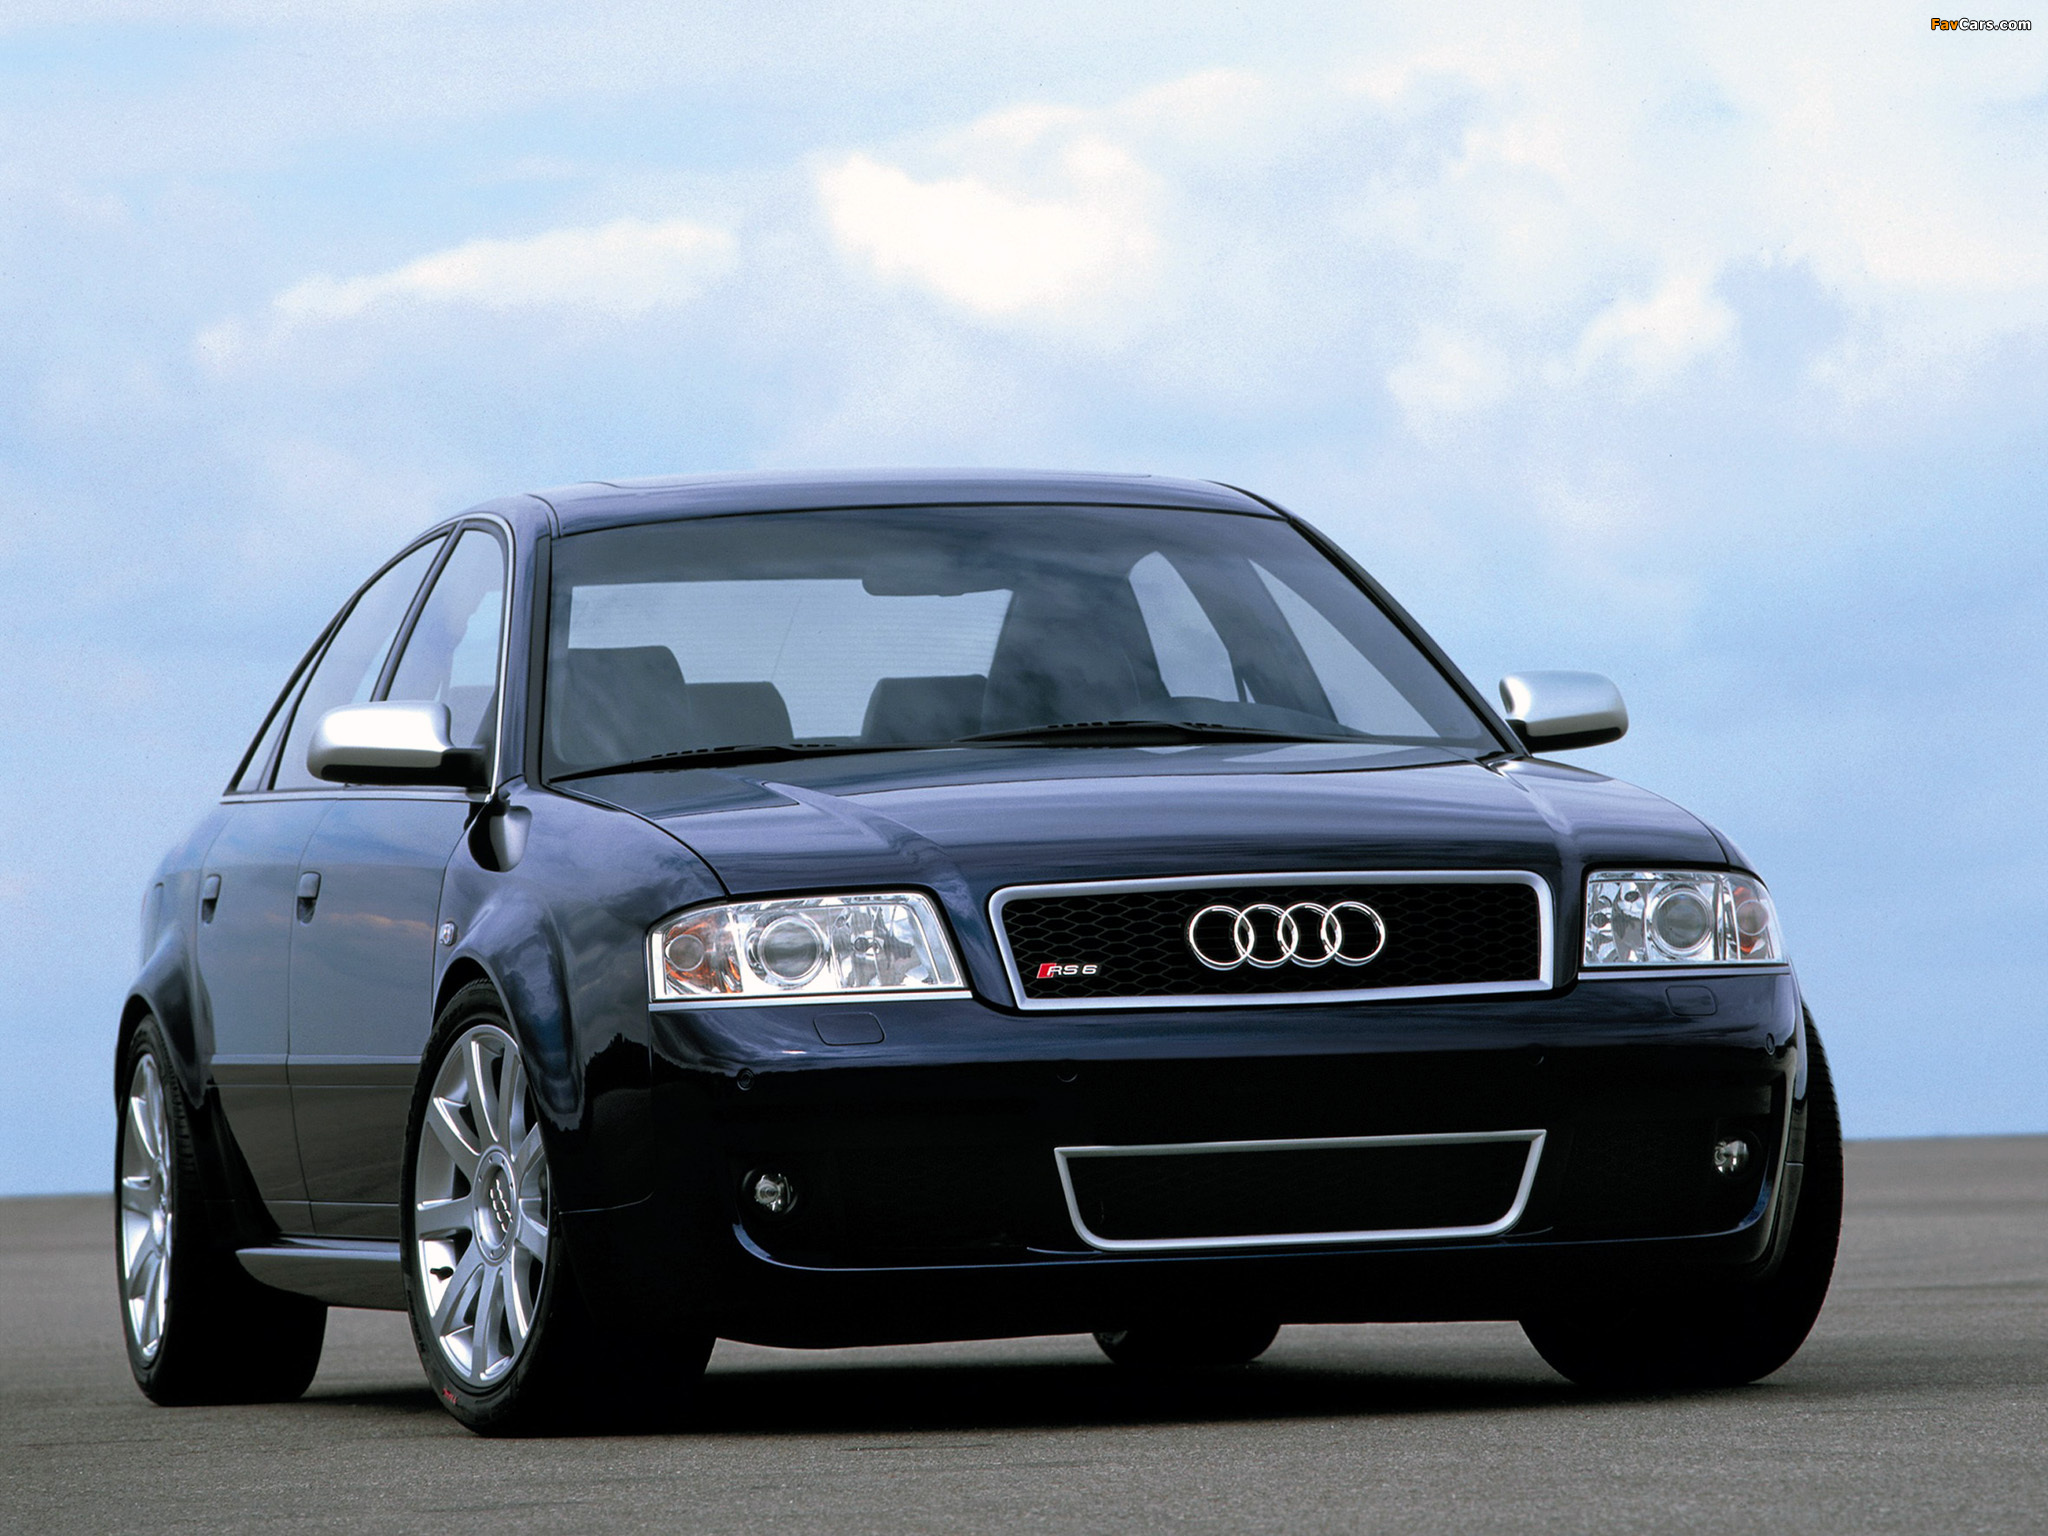 6 c 04. Audi rs6 2002. Audi a6 c5 2003. Ауди РС 6 2002 седан. Audi a6 rs6 c5.